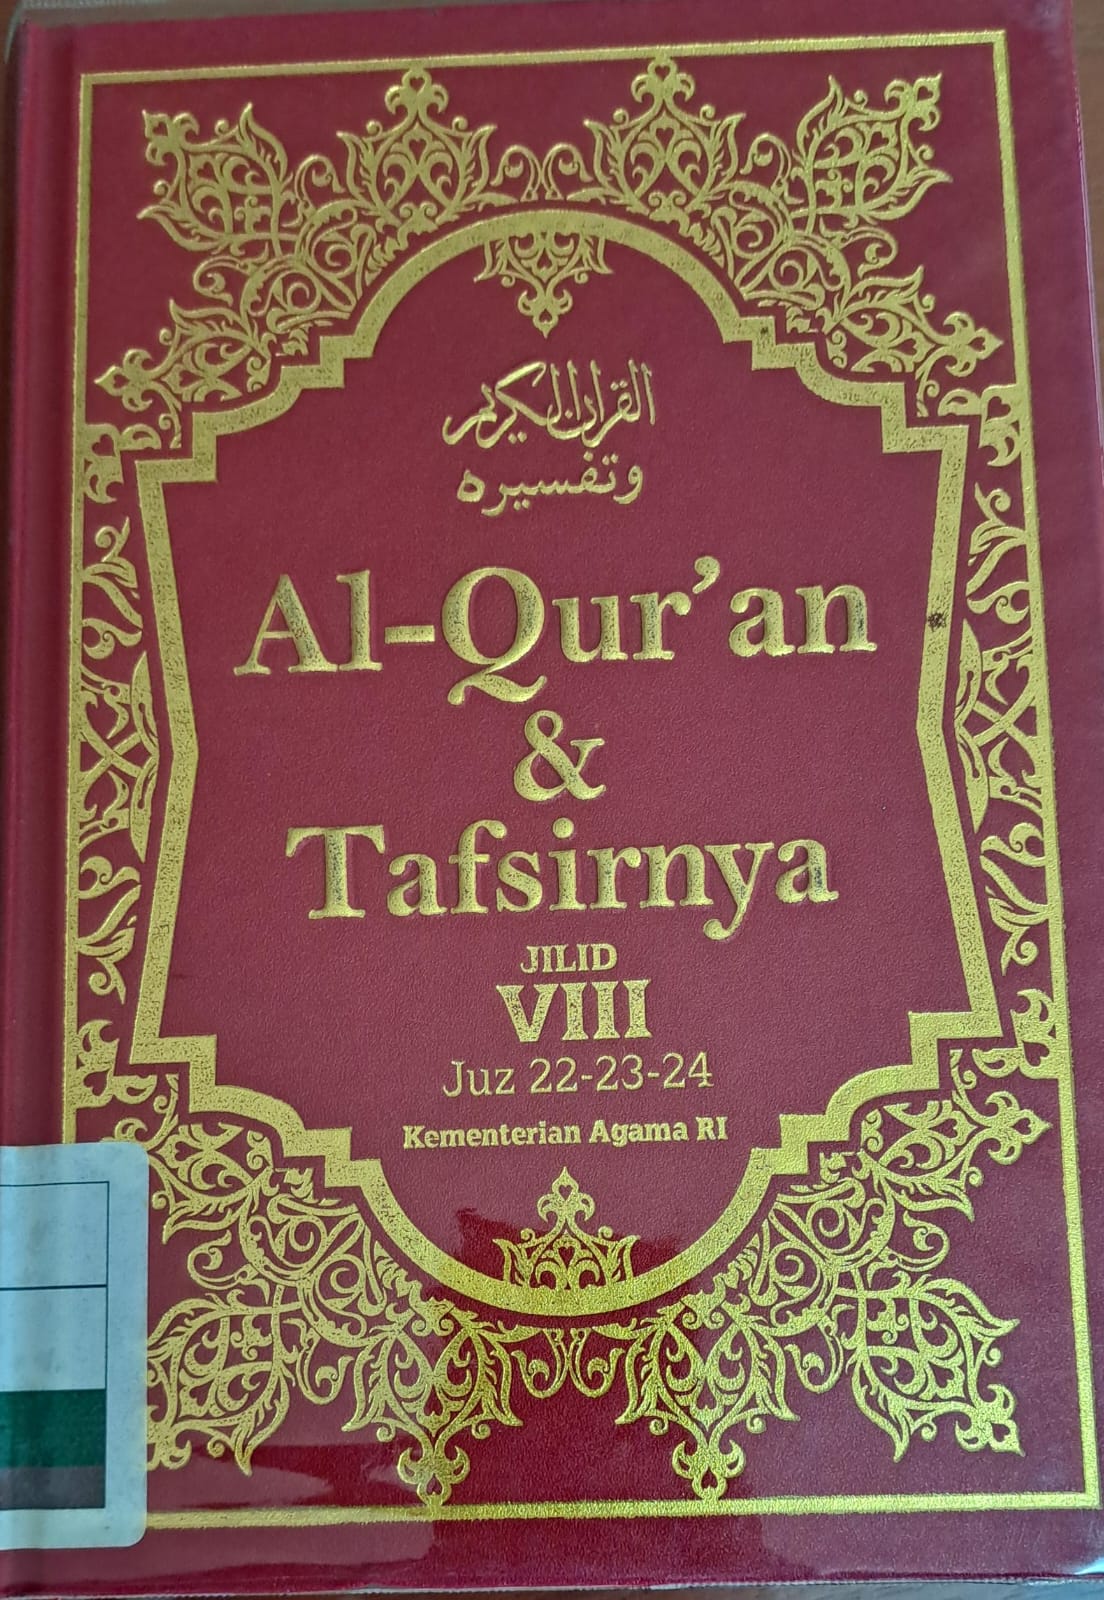 Al-qur'an & tafsirnya jilid VIII :  Juz 22-23-24